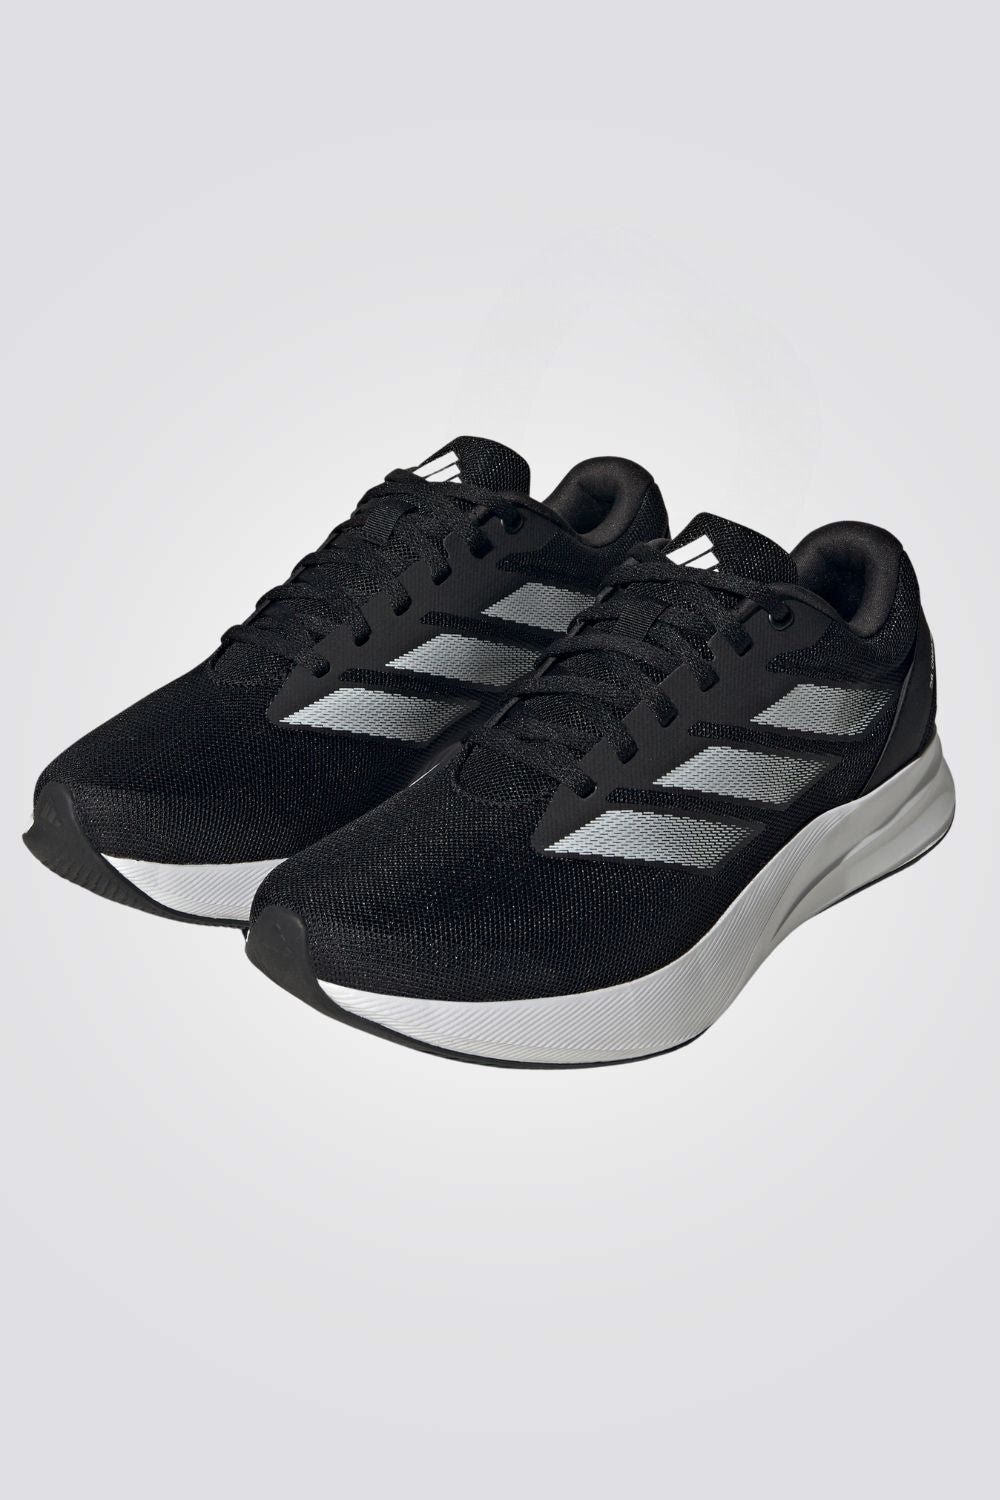 נעלי ספורט לגברים DURAMO RC SHOES בצבע שחור ולבן